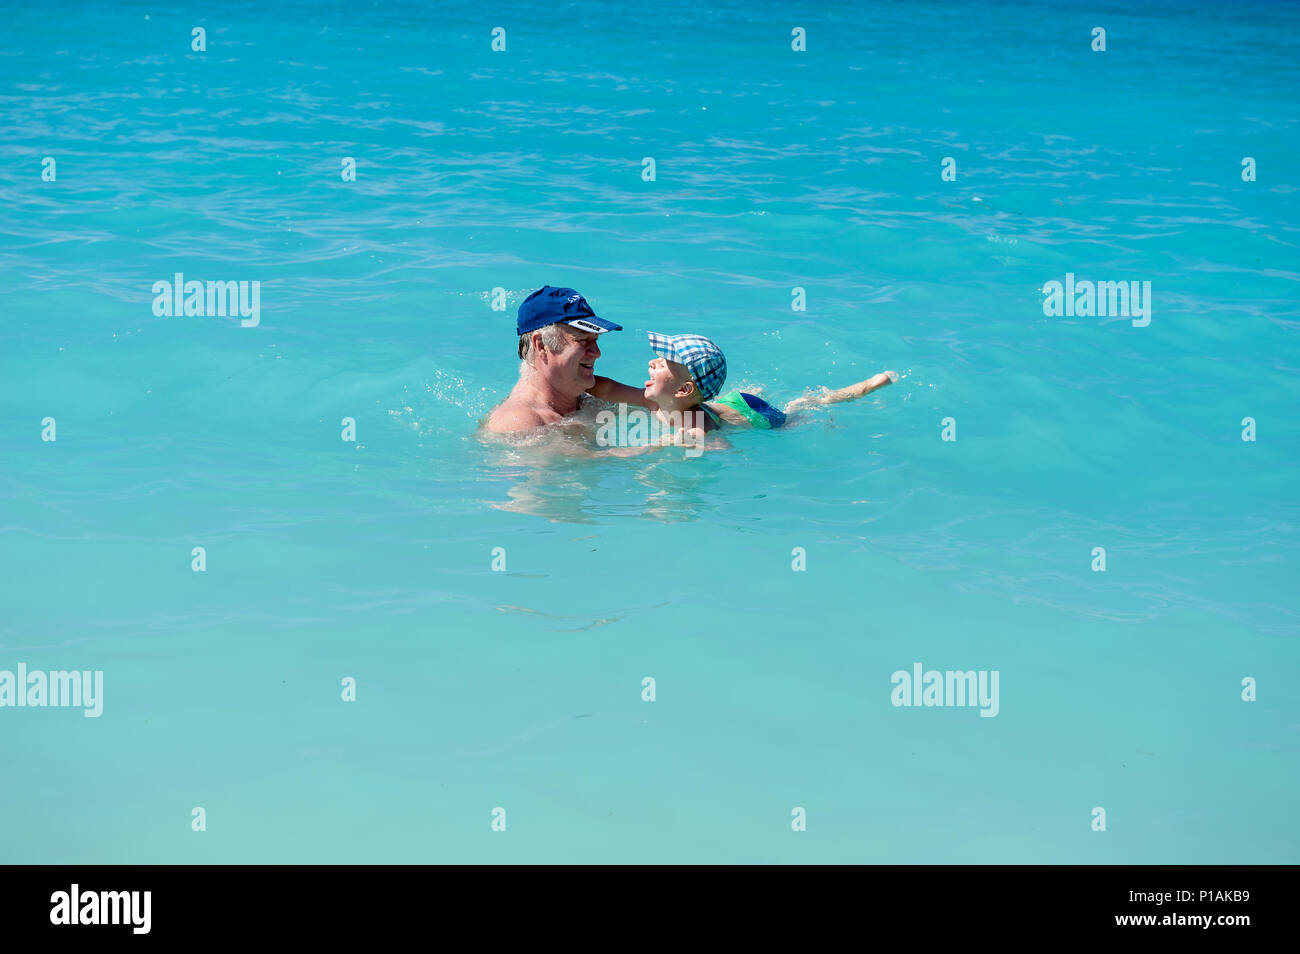 Zwei Jahre alten Sohn schwimmen mit seinem Großvater auf einem Strand, Ag. Kiriakis Strand, Kefalonia, Ionische Inseln, Griechenland, Europa Stockfoto